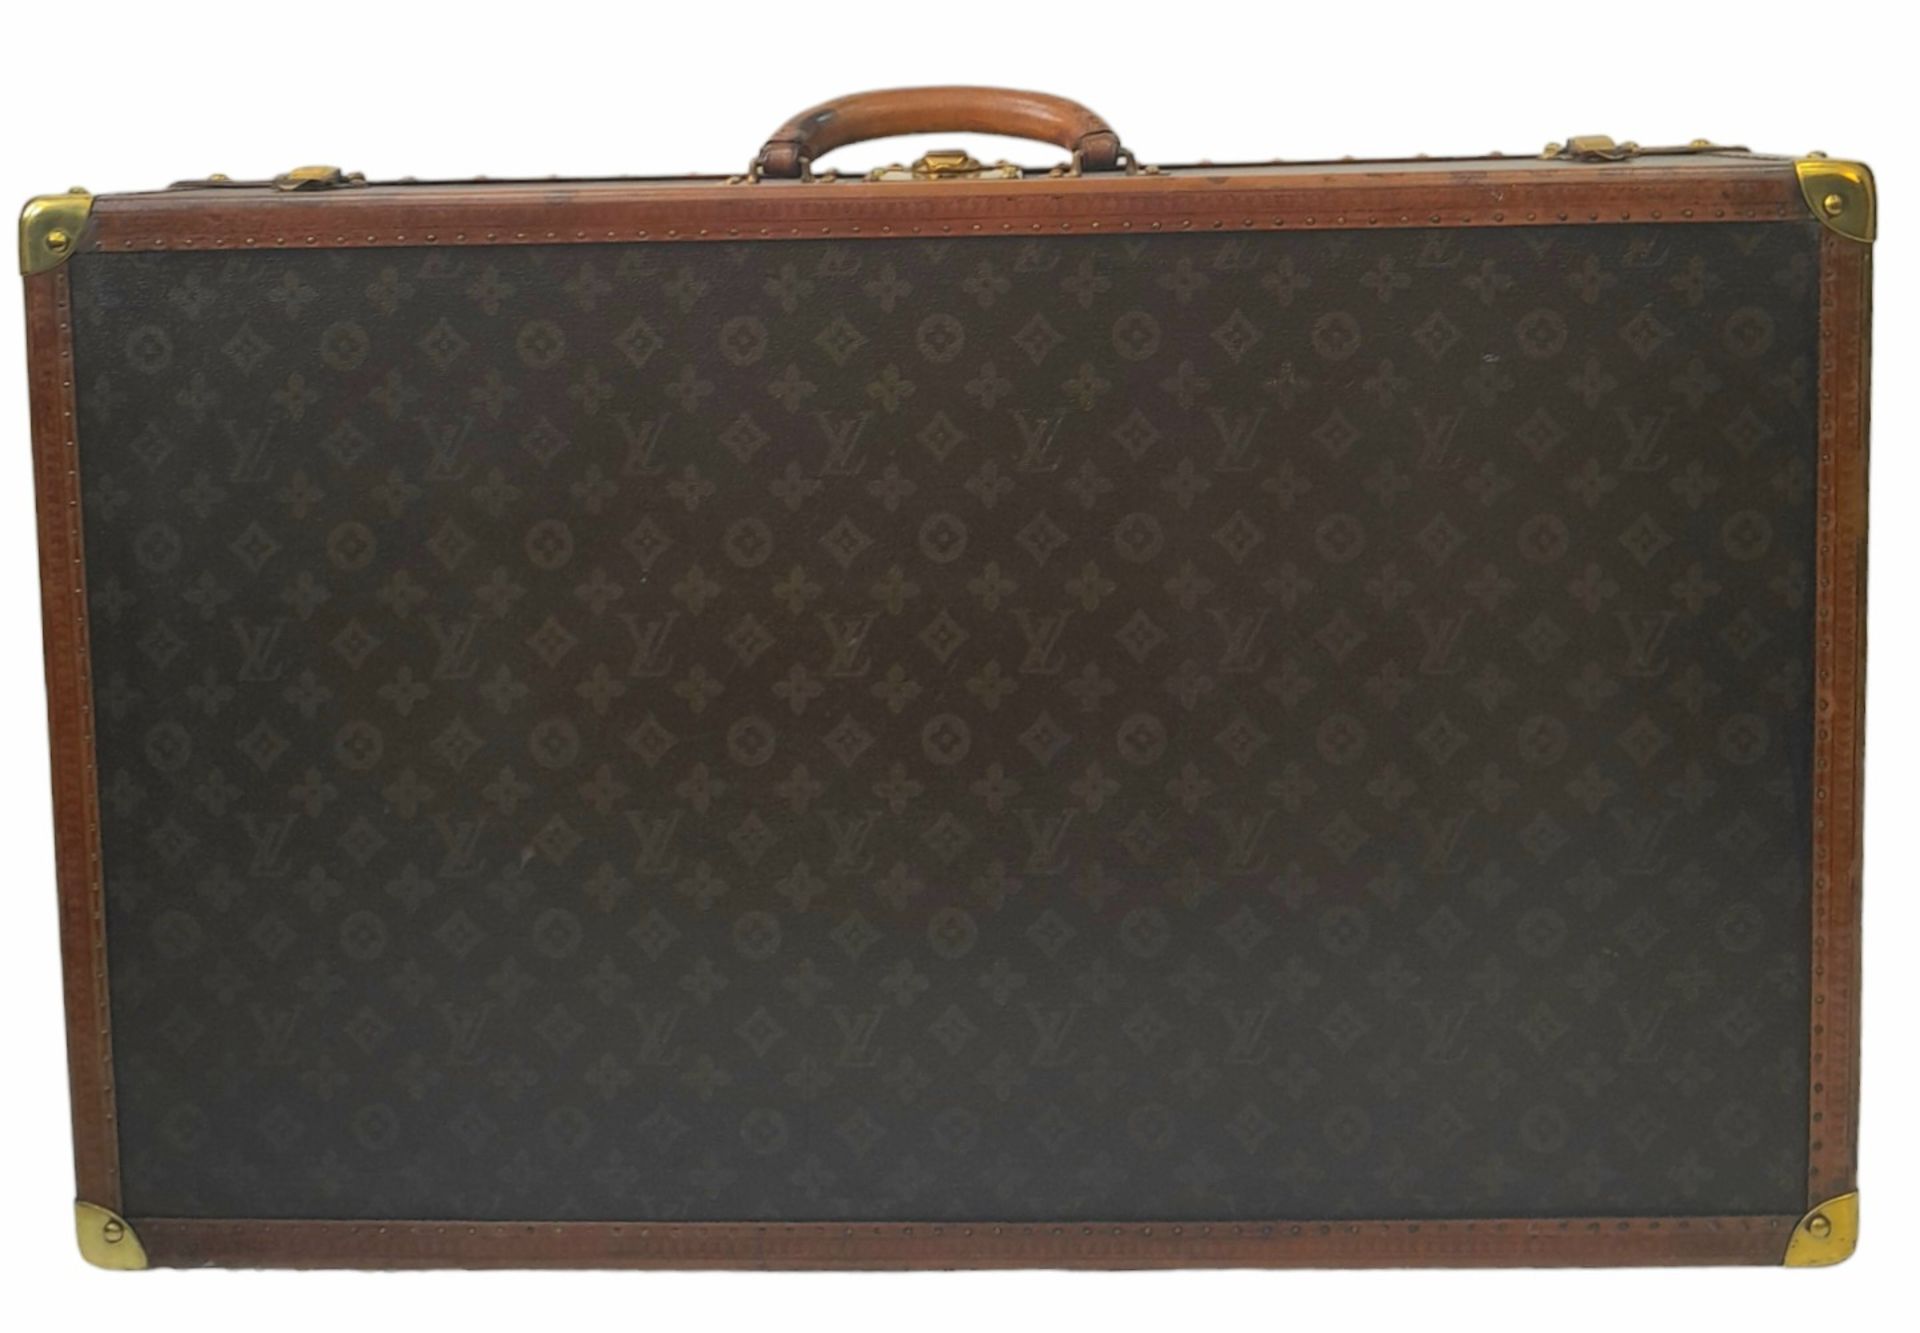 A Vintage Possibly Antique Louis Vuitton Trunk/Hard Suitcase. Canvas monogram LV exterior with - Bild 2 aus 15